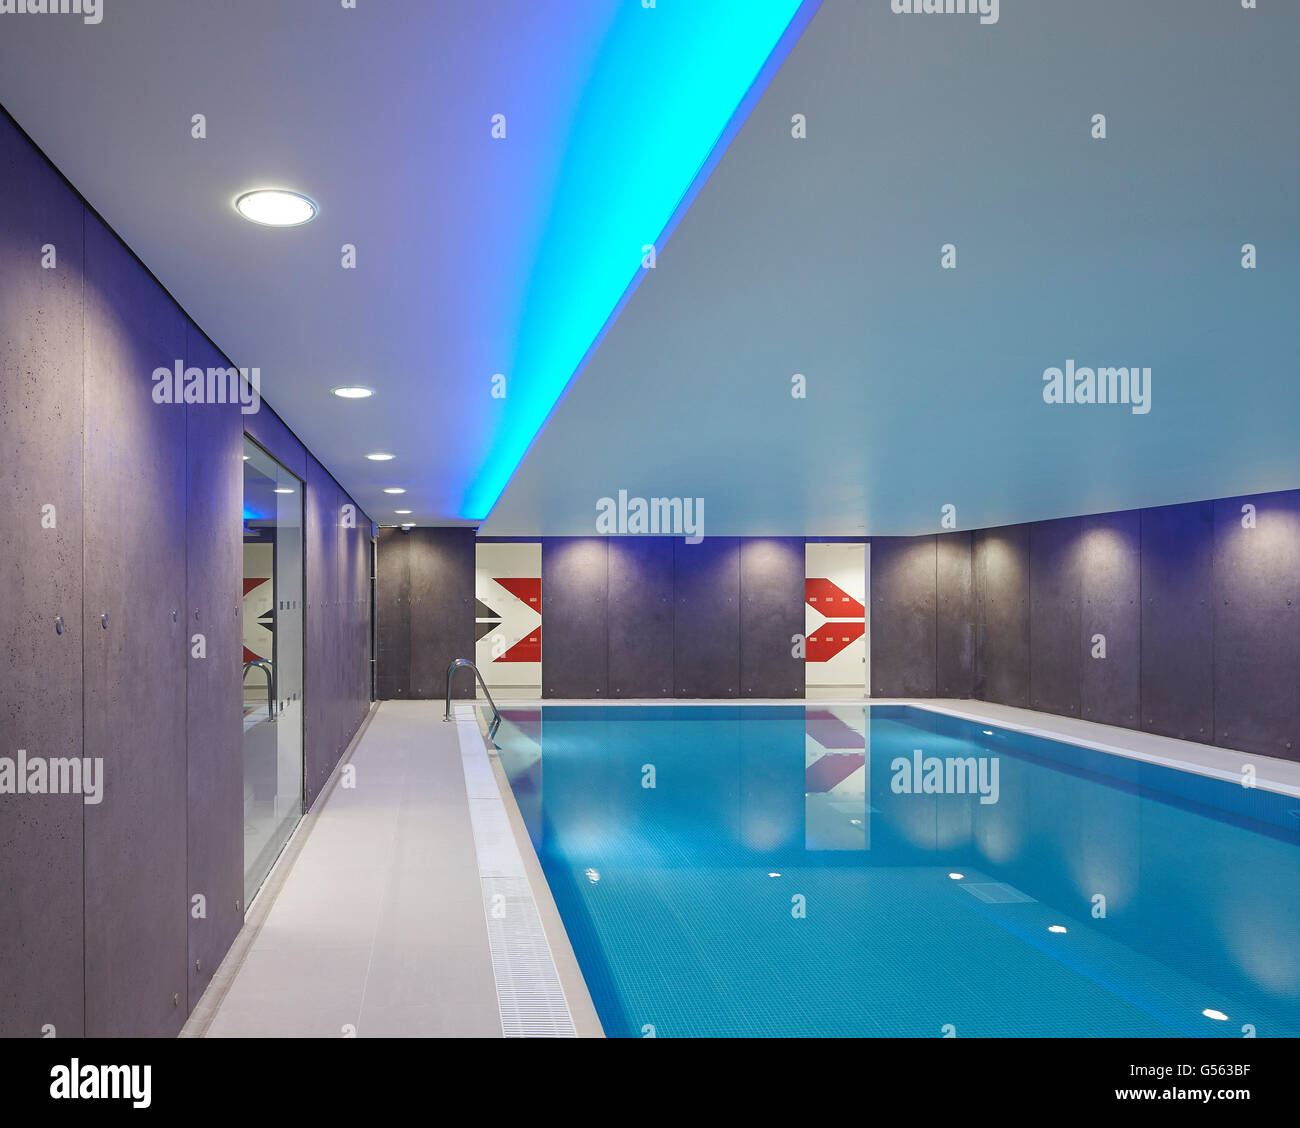 Hallenbad mit eingefügten Stimmungslicht. Frühling Mews, London, Vereinigtes Königreich. Architekt: Manser Praxis, 2015. Stockfoto